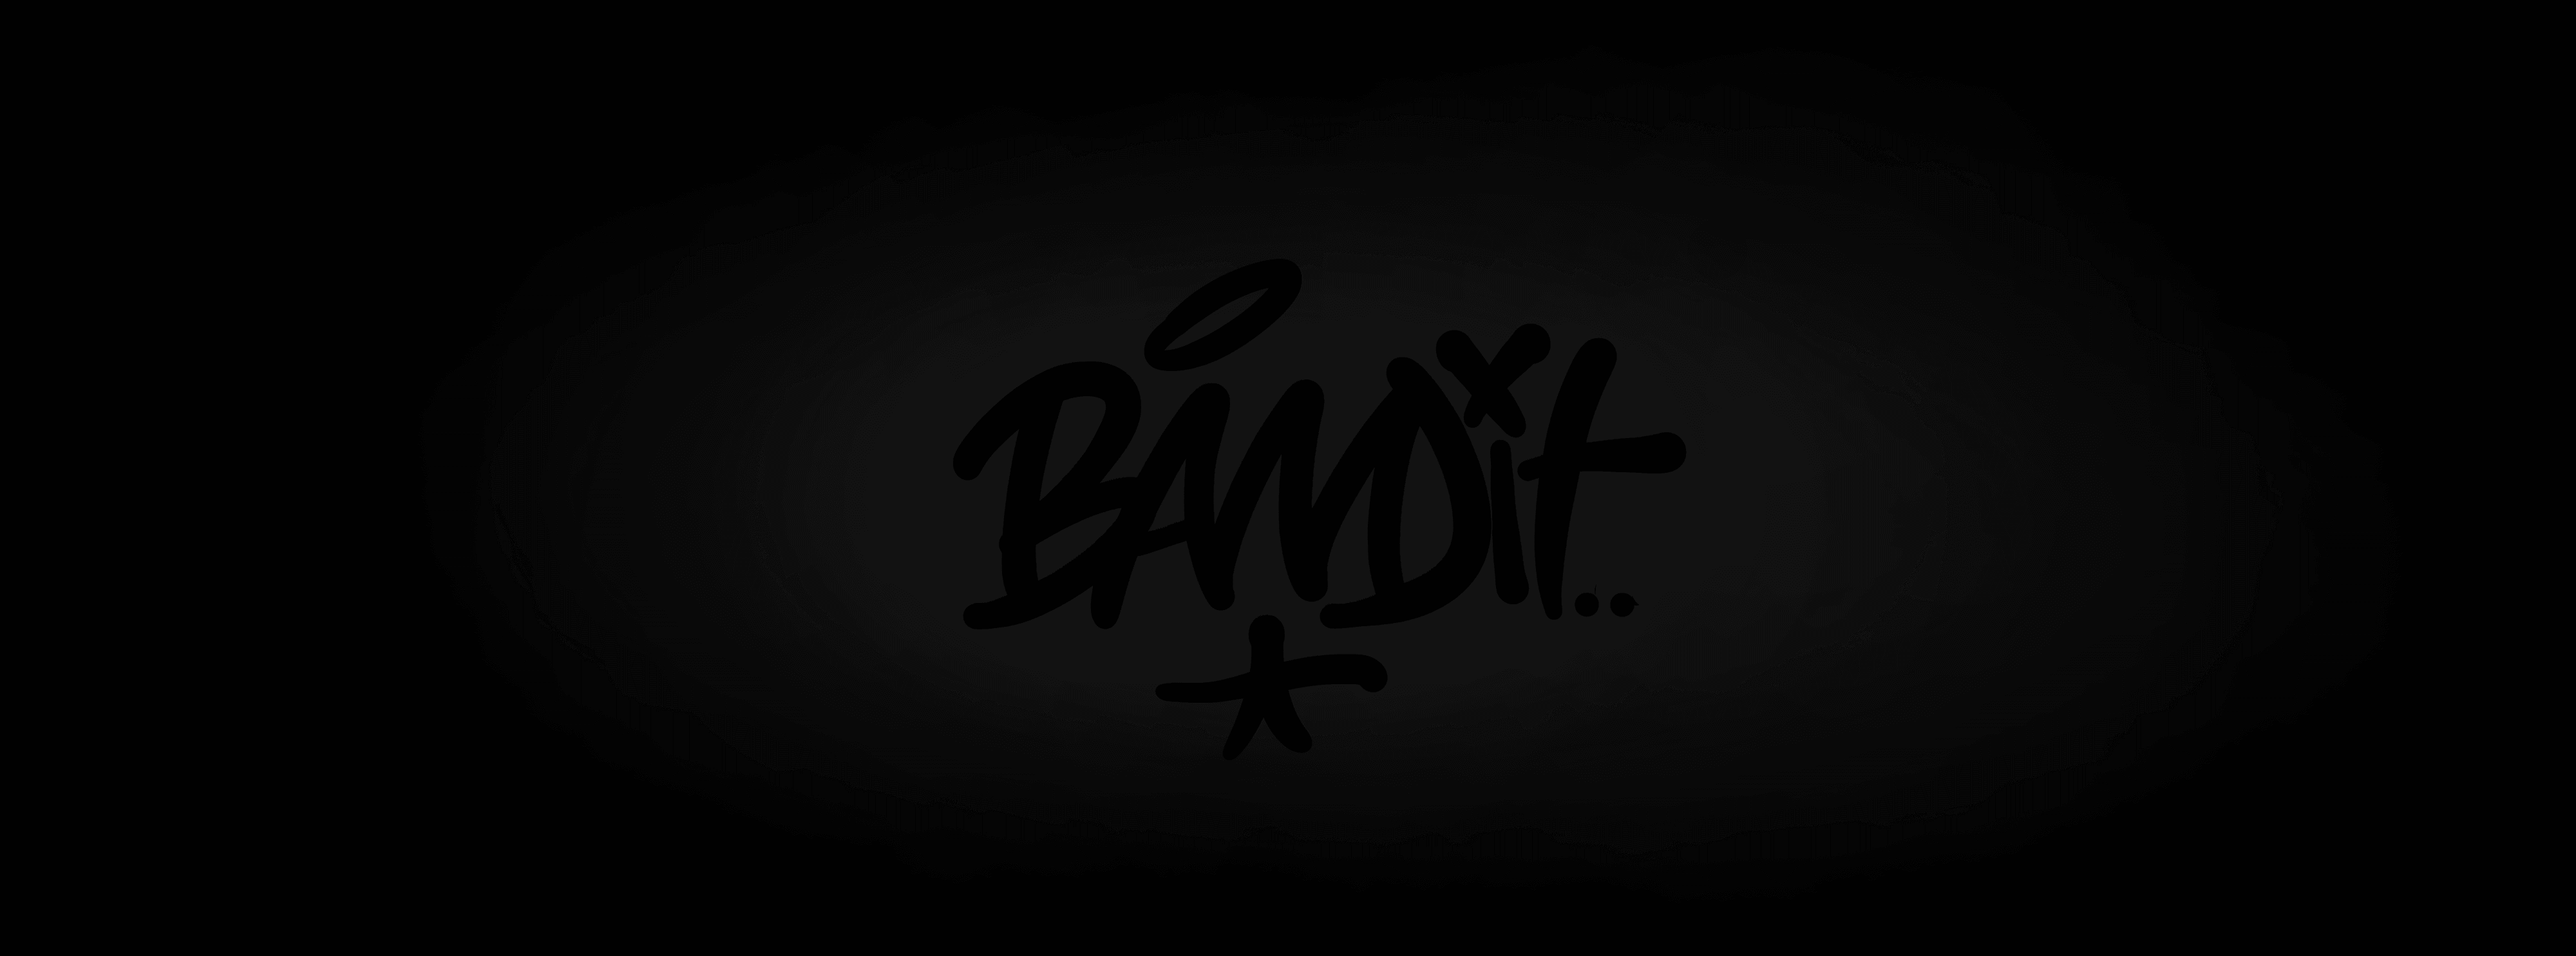 BANDIT-ONE 橫幅